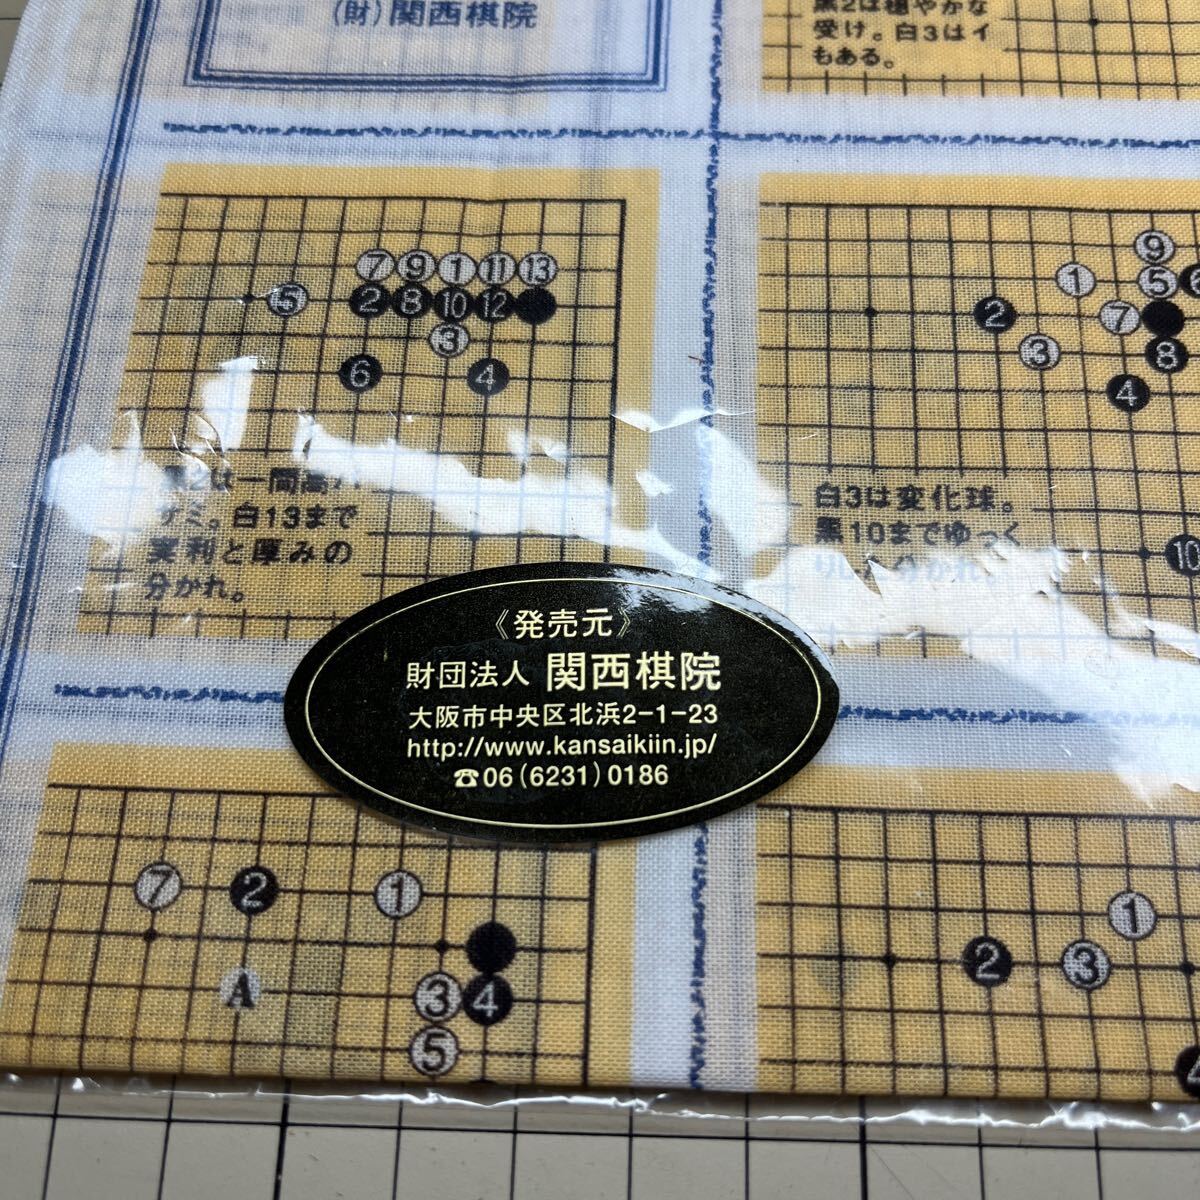 囲碁 定石ハンカチ 関西棋院の画像2